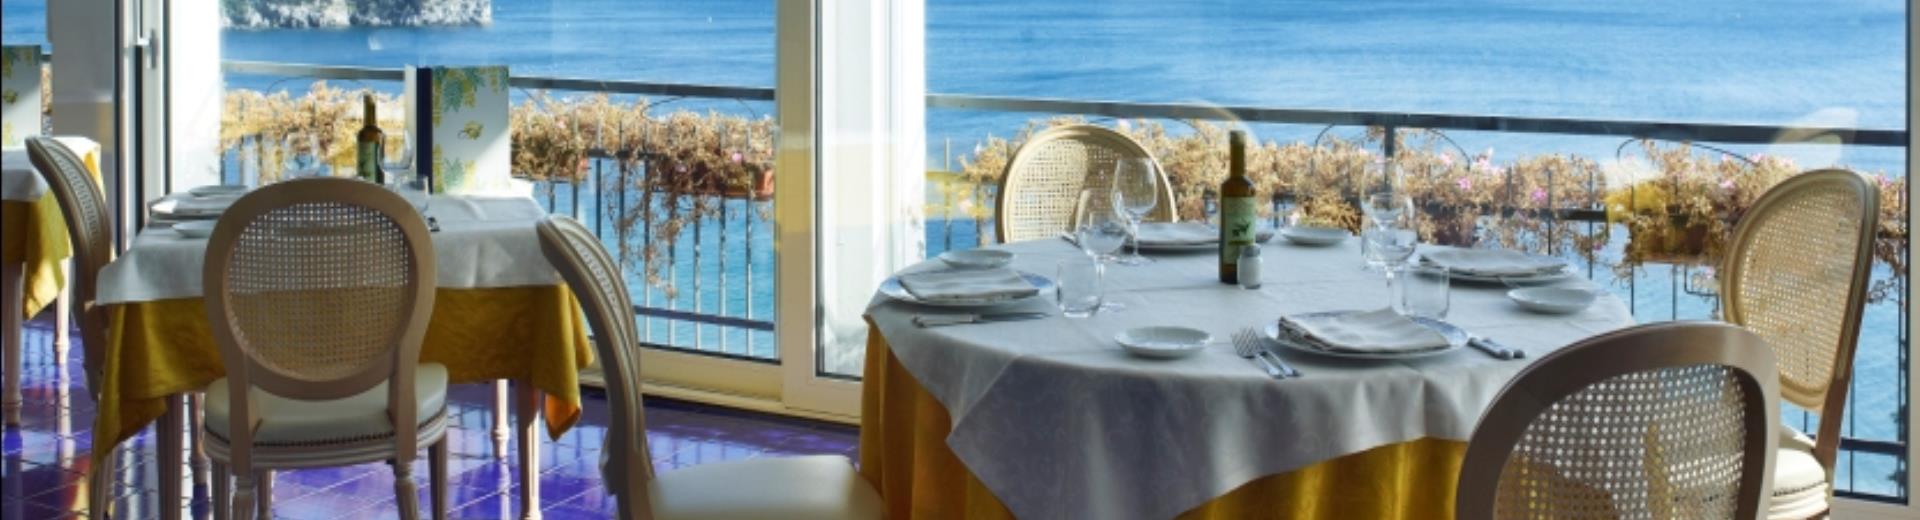 Ristorante con incantevole panorama sul mare di Spotorno. Vieni a gustare le specialità liguri.